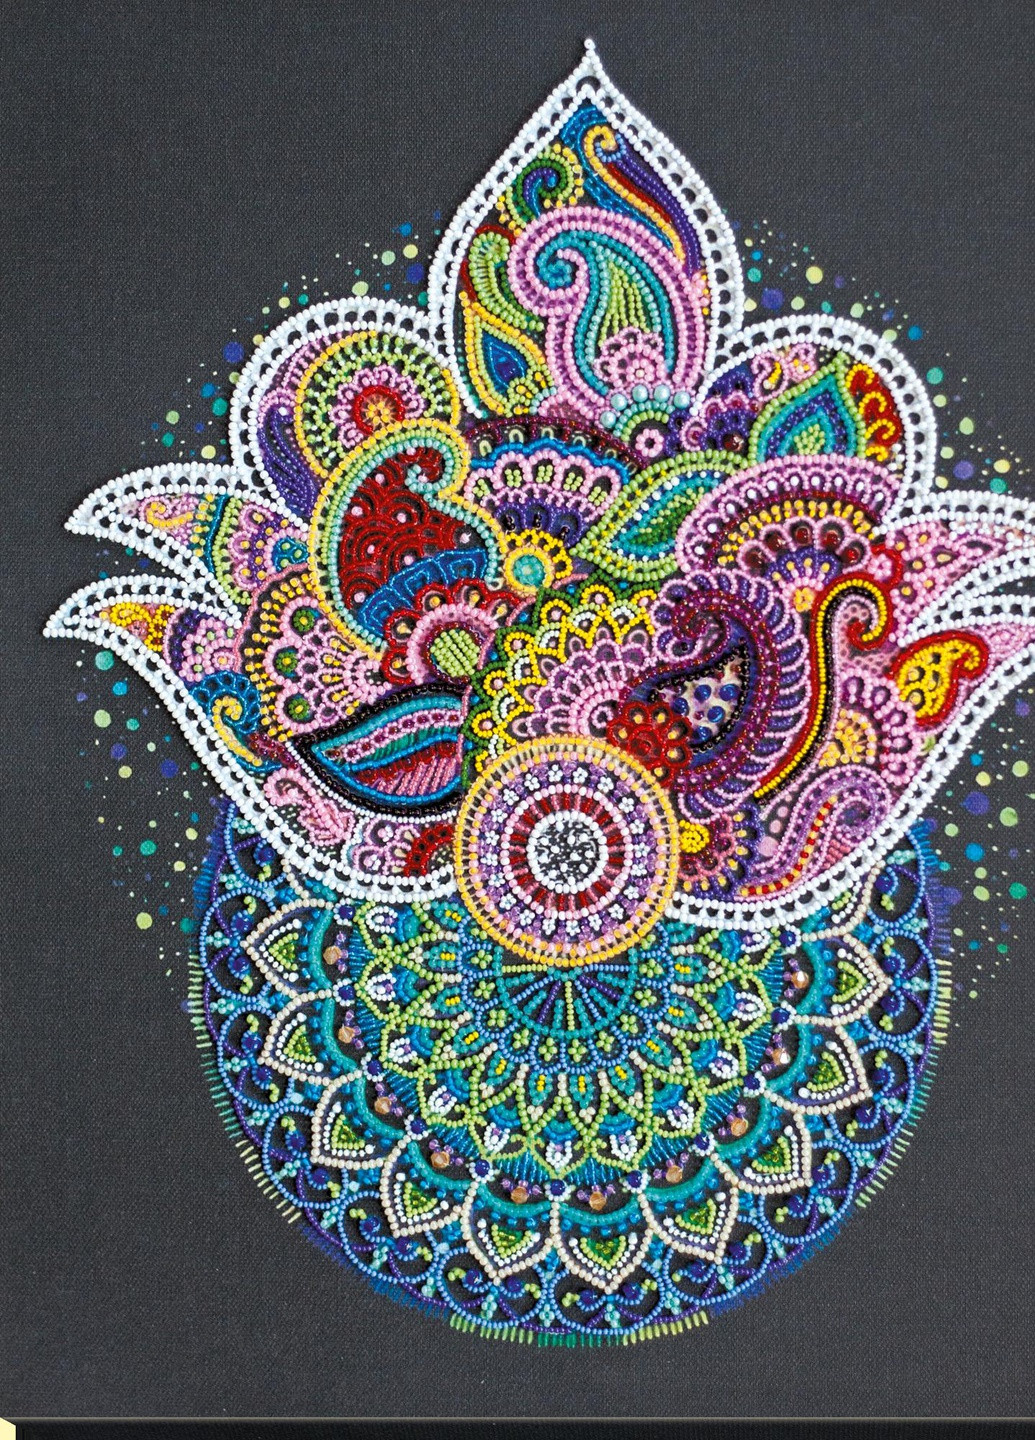 Набор для вышивки бисером на натуральном художественном холсте "Созерцая…" Абрис Арт AB-714 Abris Art (255337287)